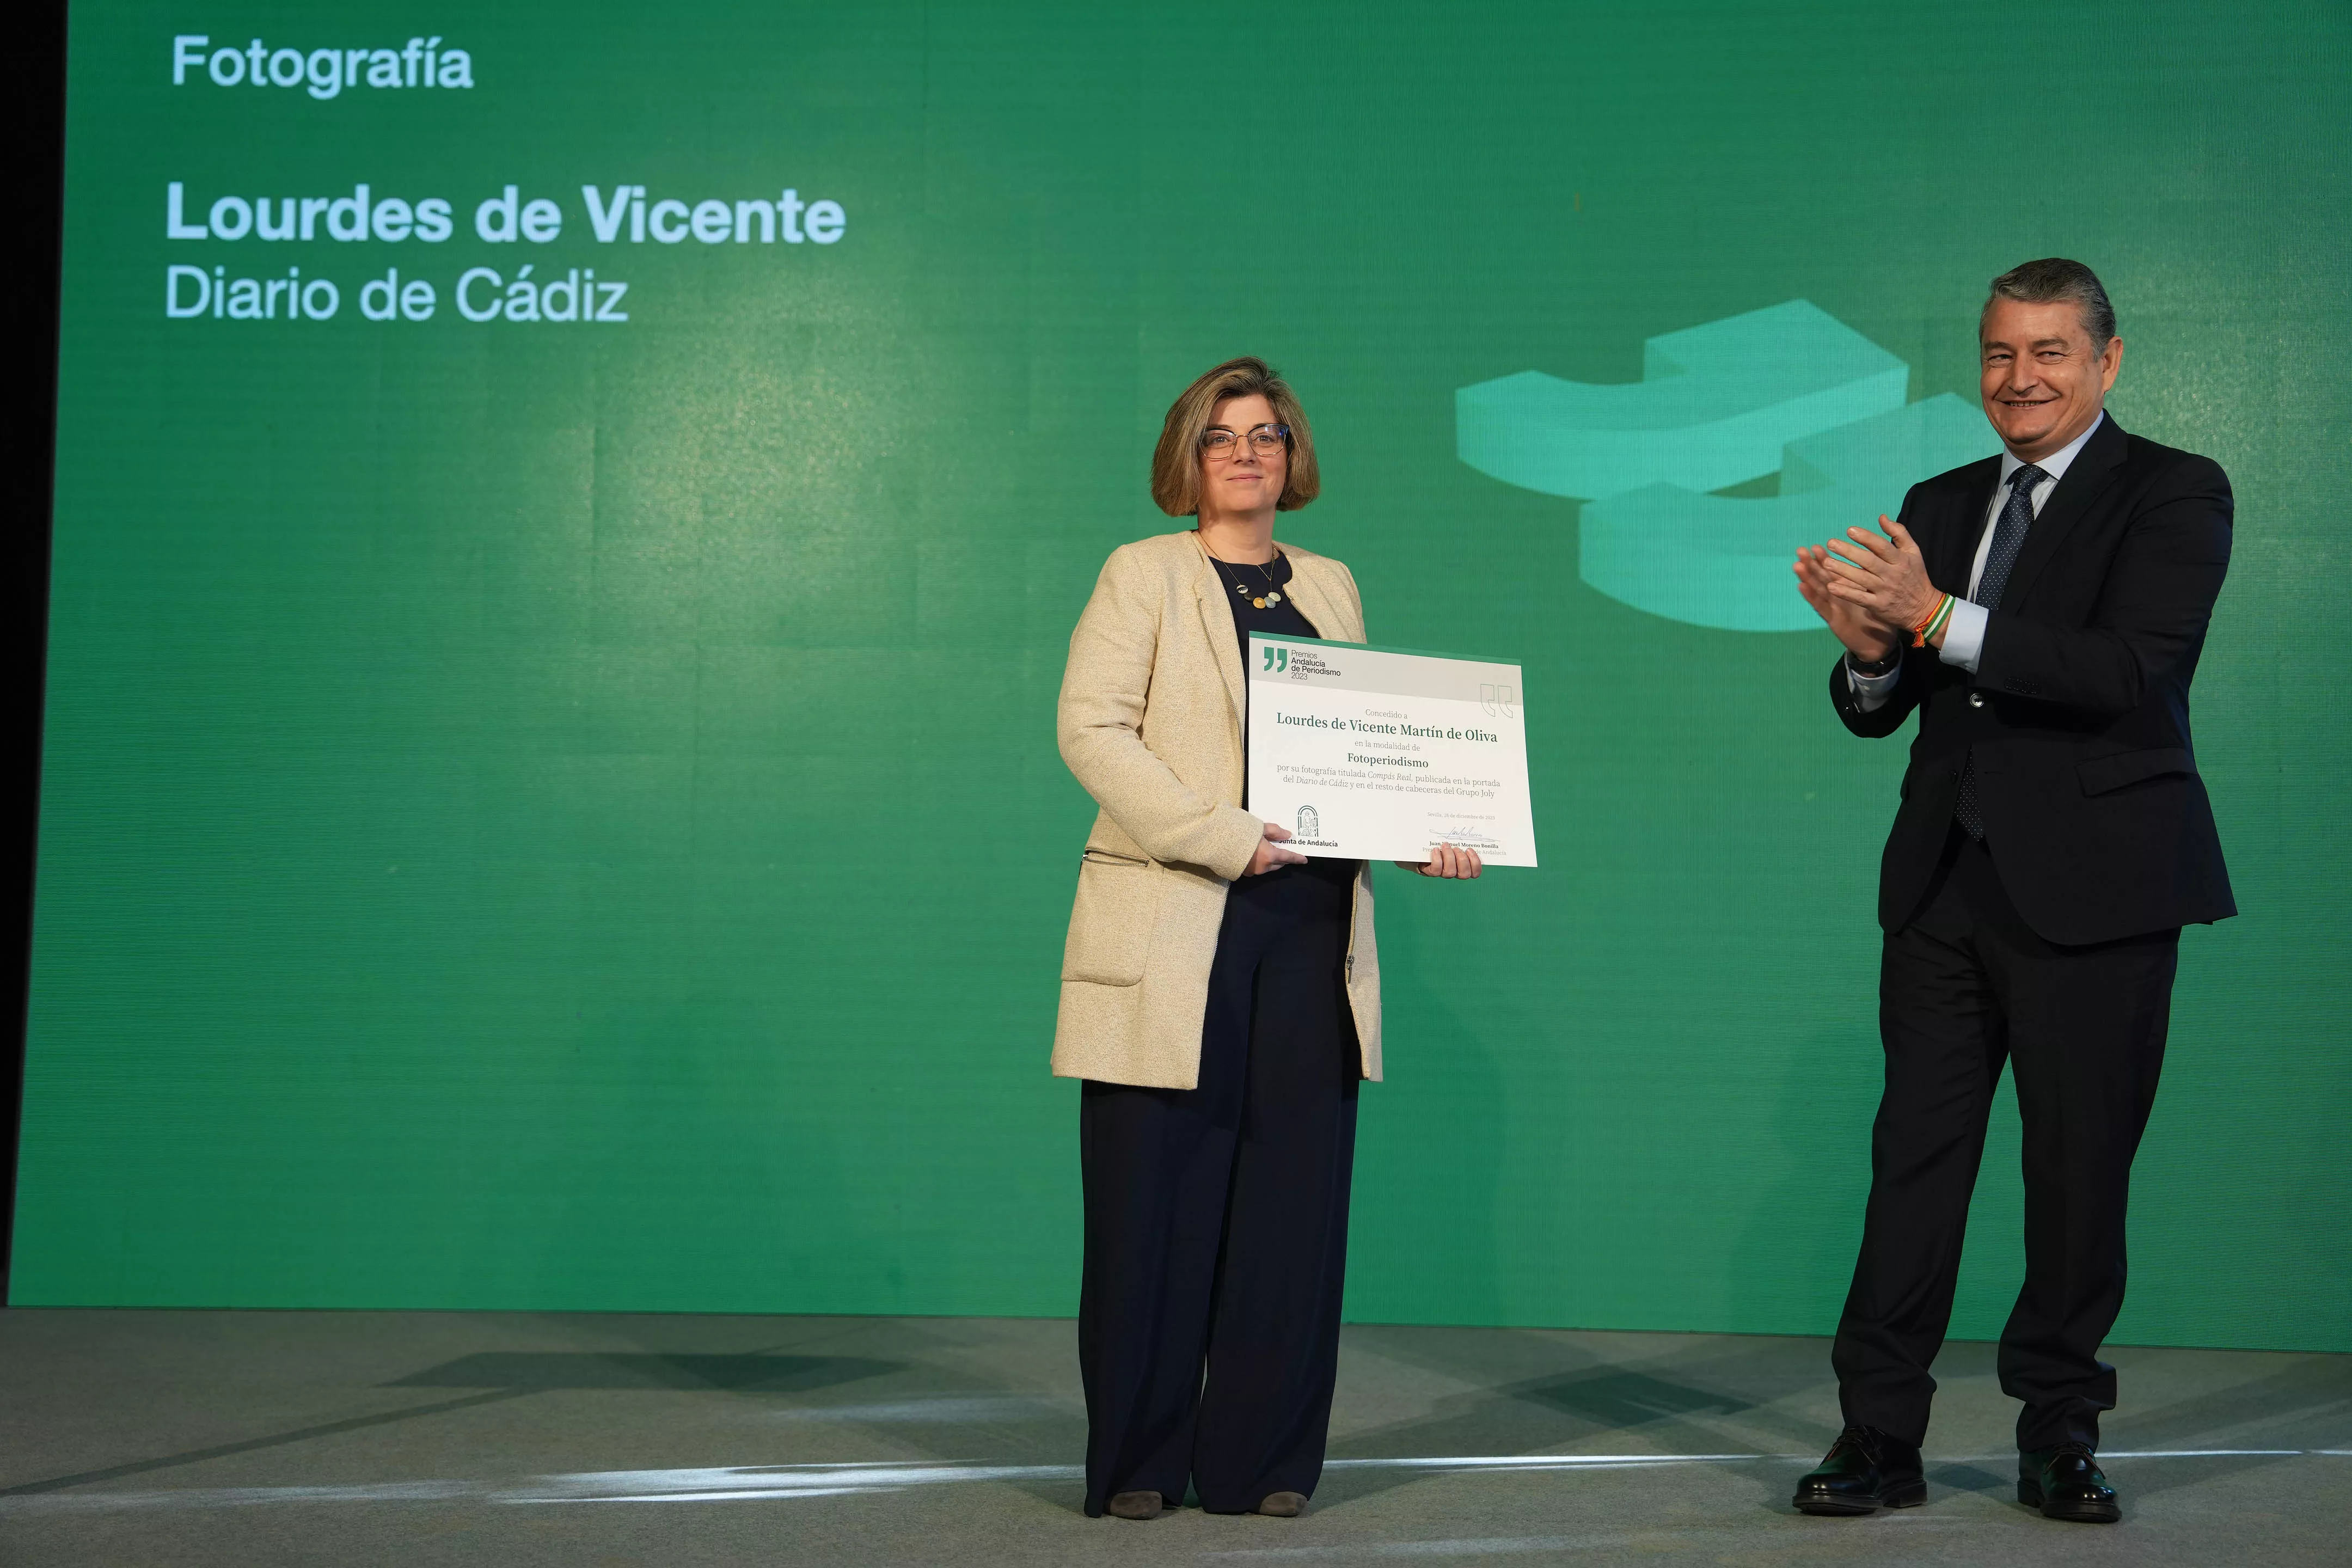 La fotoperiodista Lourdes de Vicente recibiendo el premio en la gala de entrega de la 38 edición de los Premios Andalucía de Periodismo.